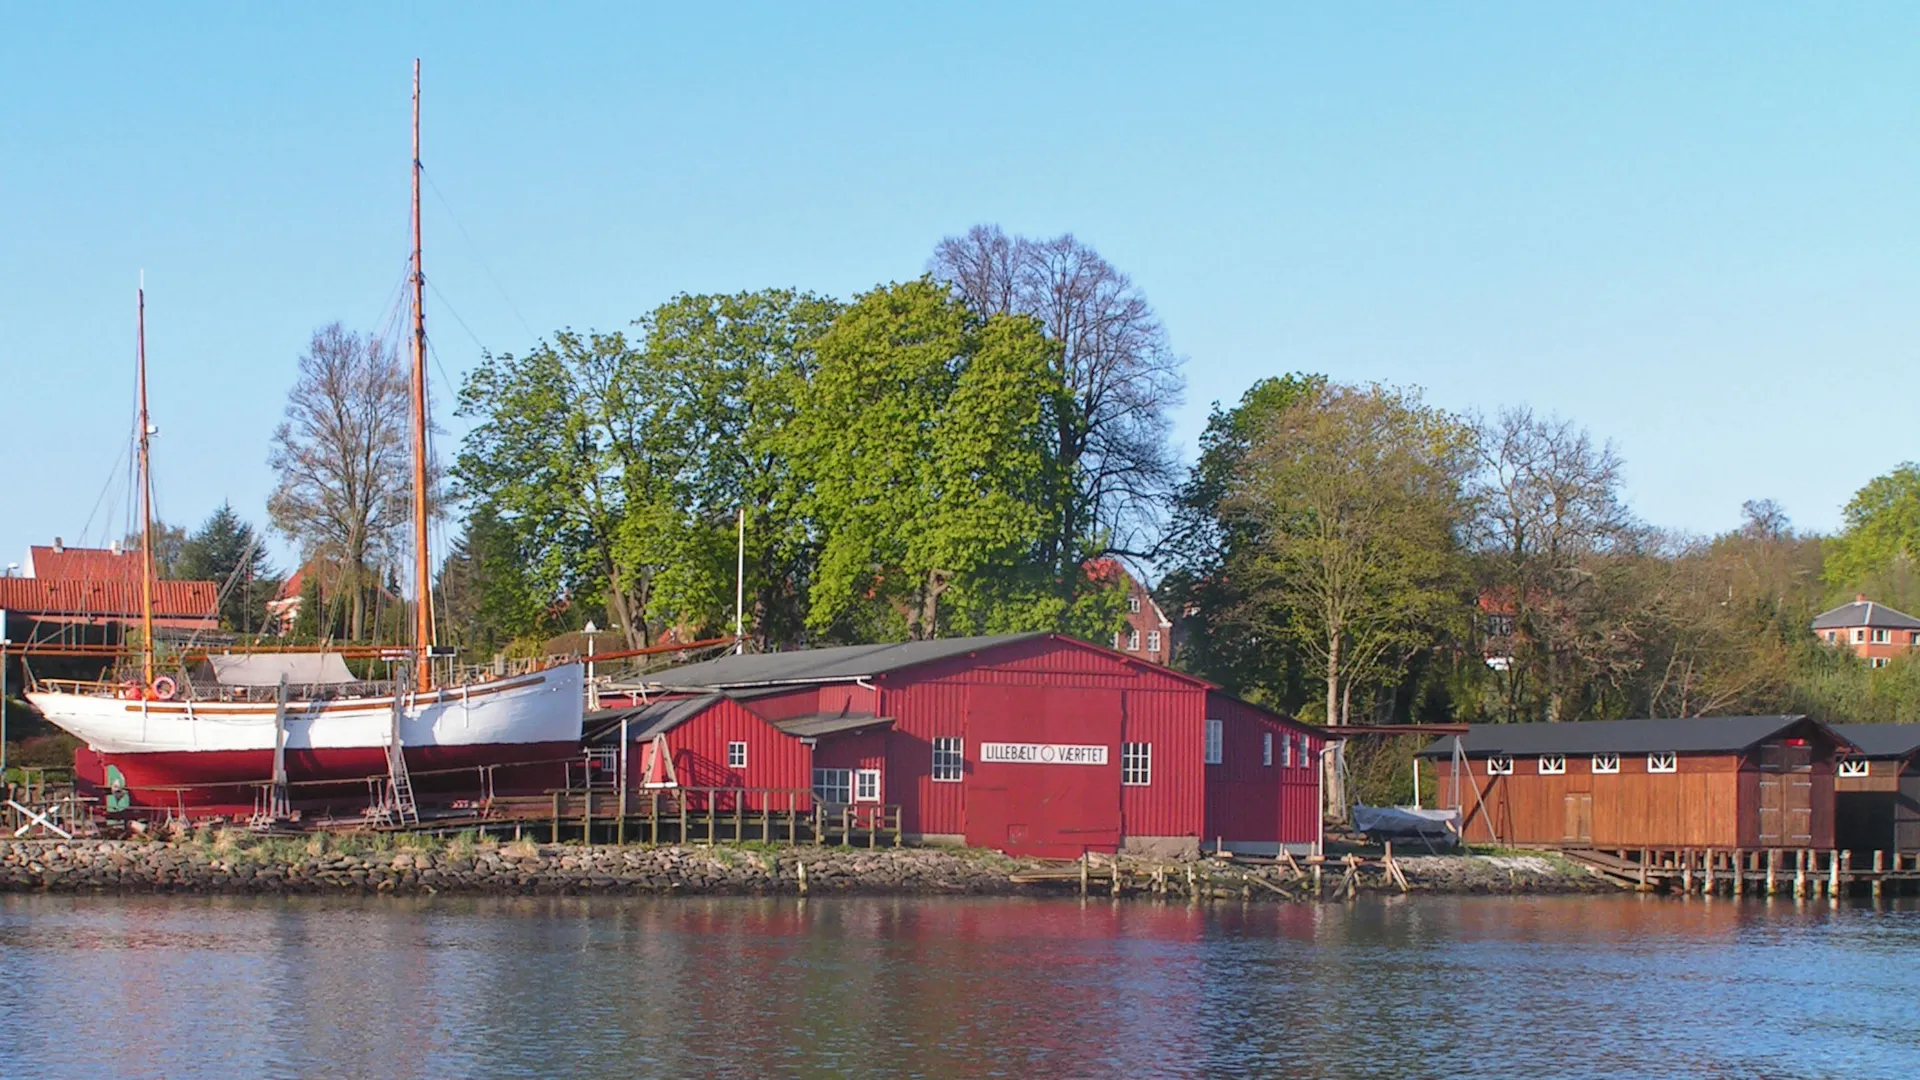 Lillebælt-værftet, Middelfart
Bådebyggeri,
Grundlagt af Mads
Museumsværft
Søfarthistorisk center.
Gamle håndværk
Teater og musik